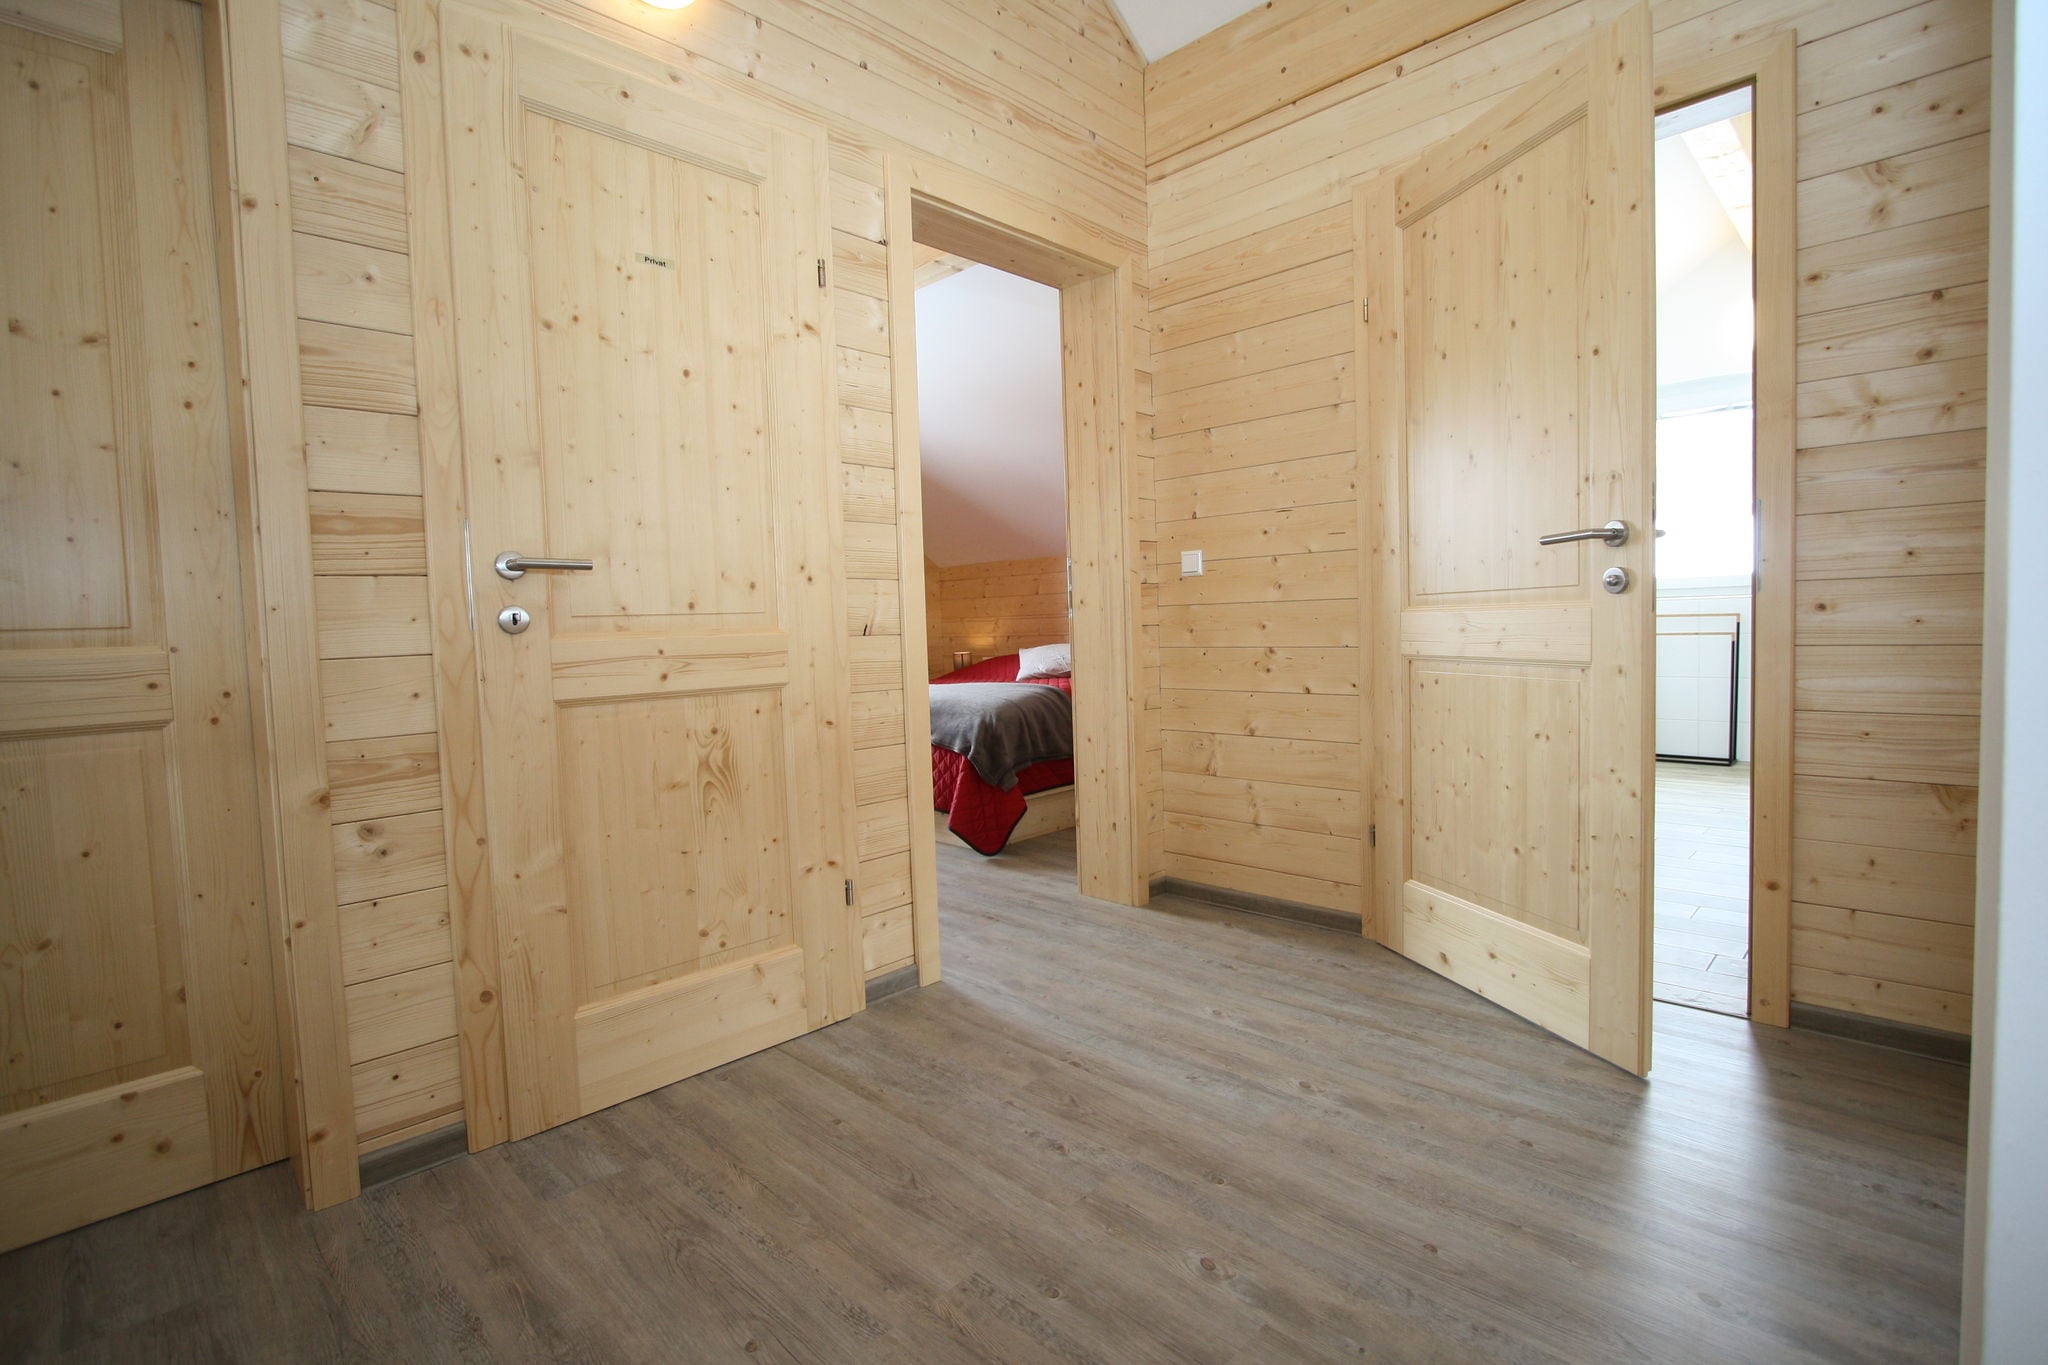 Chalet in Hohentauern in Styria with sauna